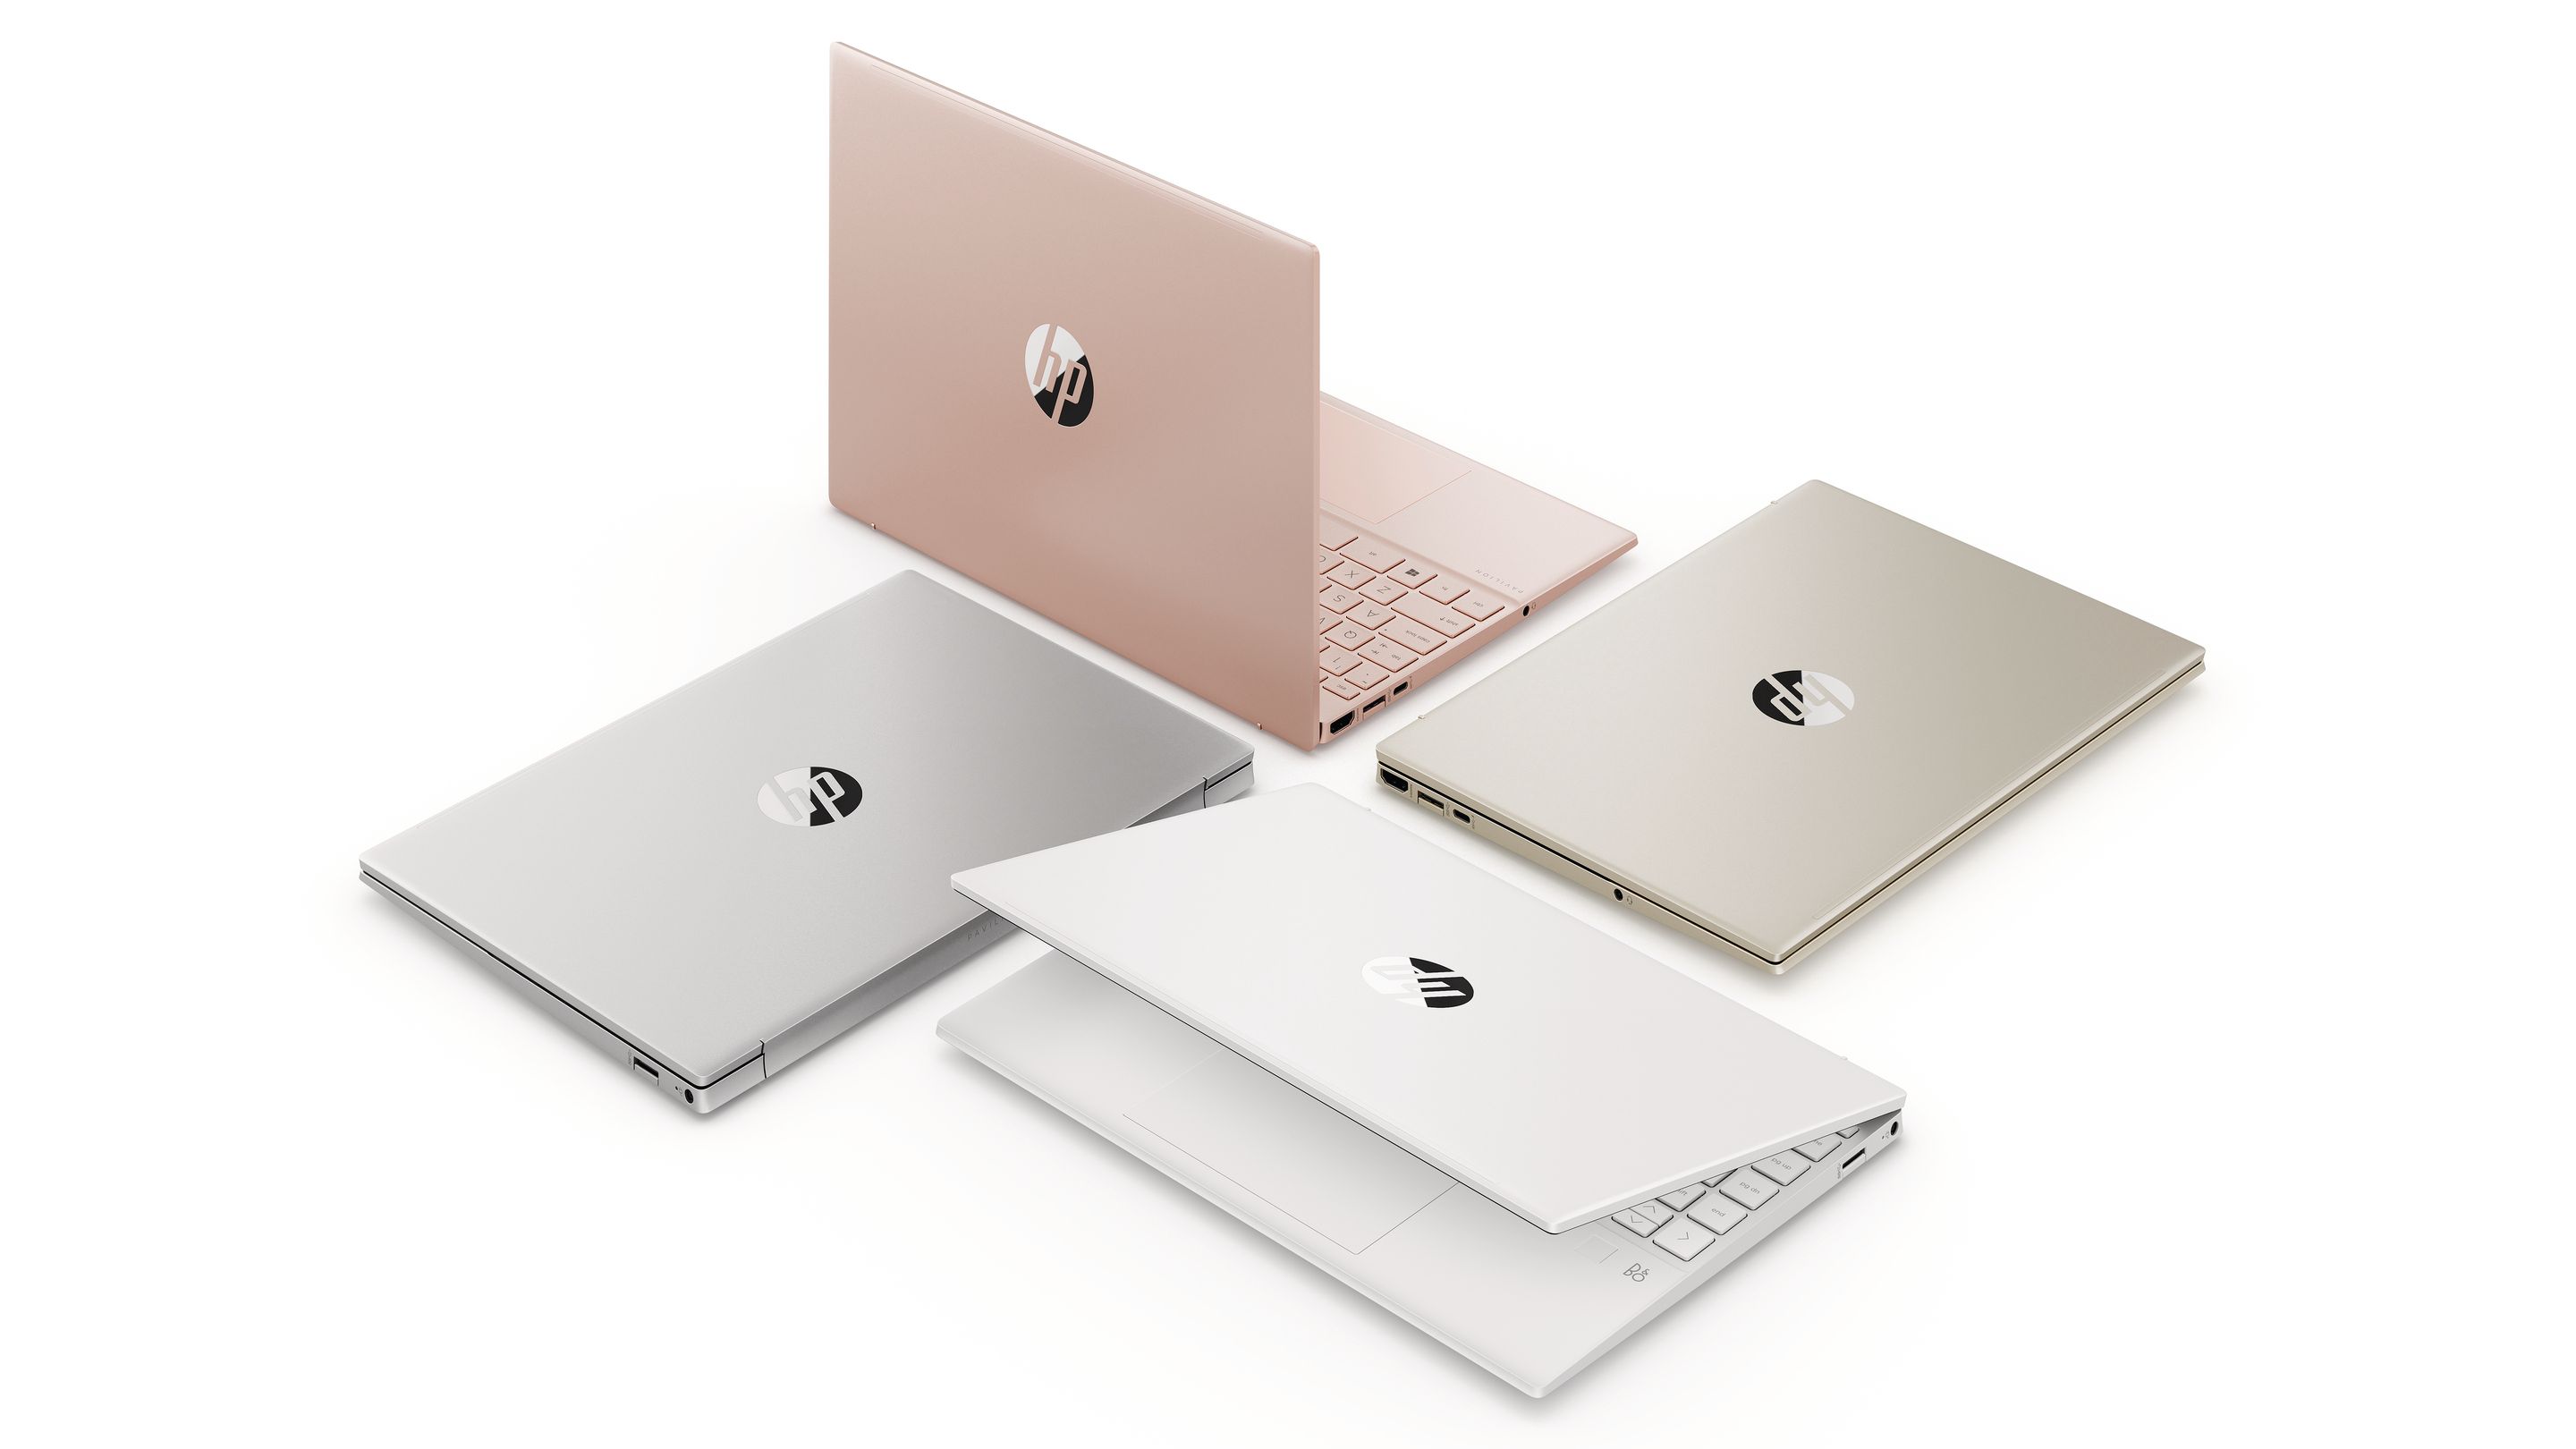 Ο HP Pavilion Aero 13 διατίθεται σε εντυπωσιακές επιλογές χρωμάτων, συμπεριλαμβανομένων των Pale Rose Gold, Warm Gold, Ceramic White και Natural Silver.